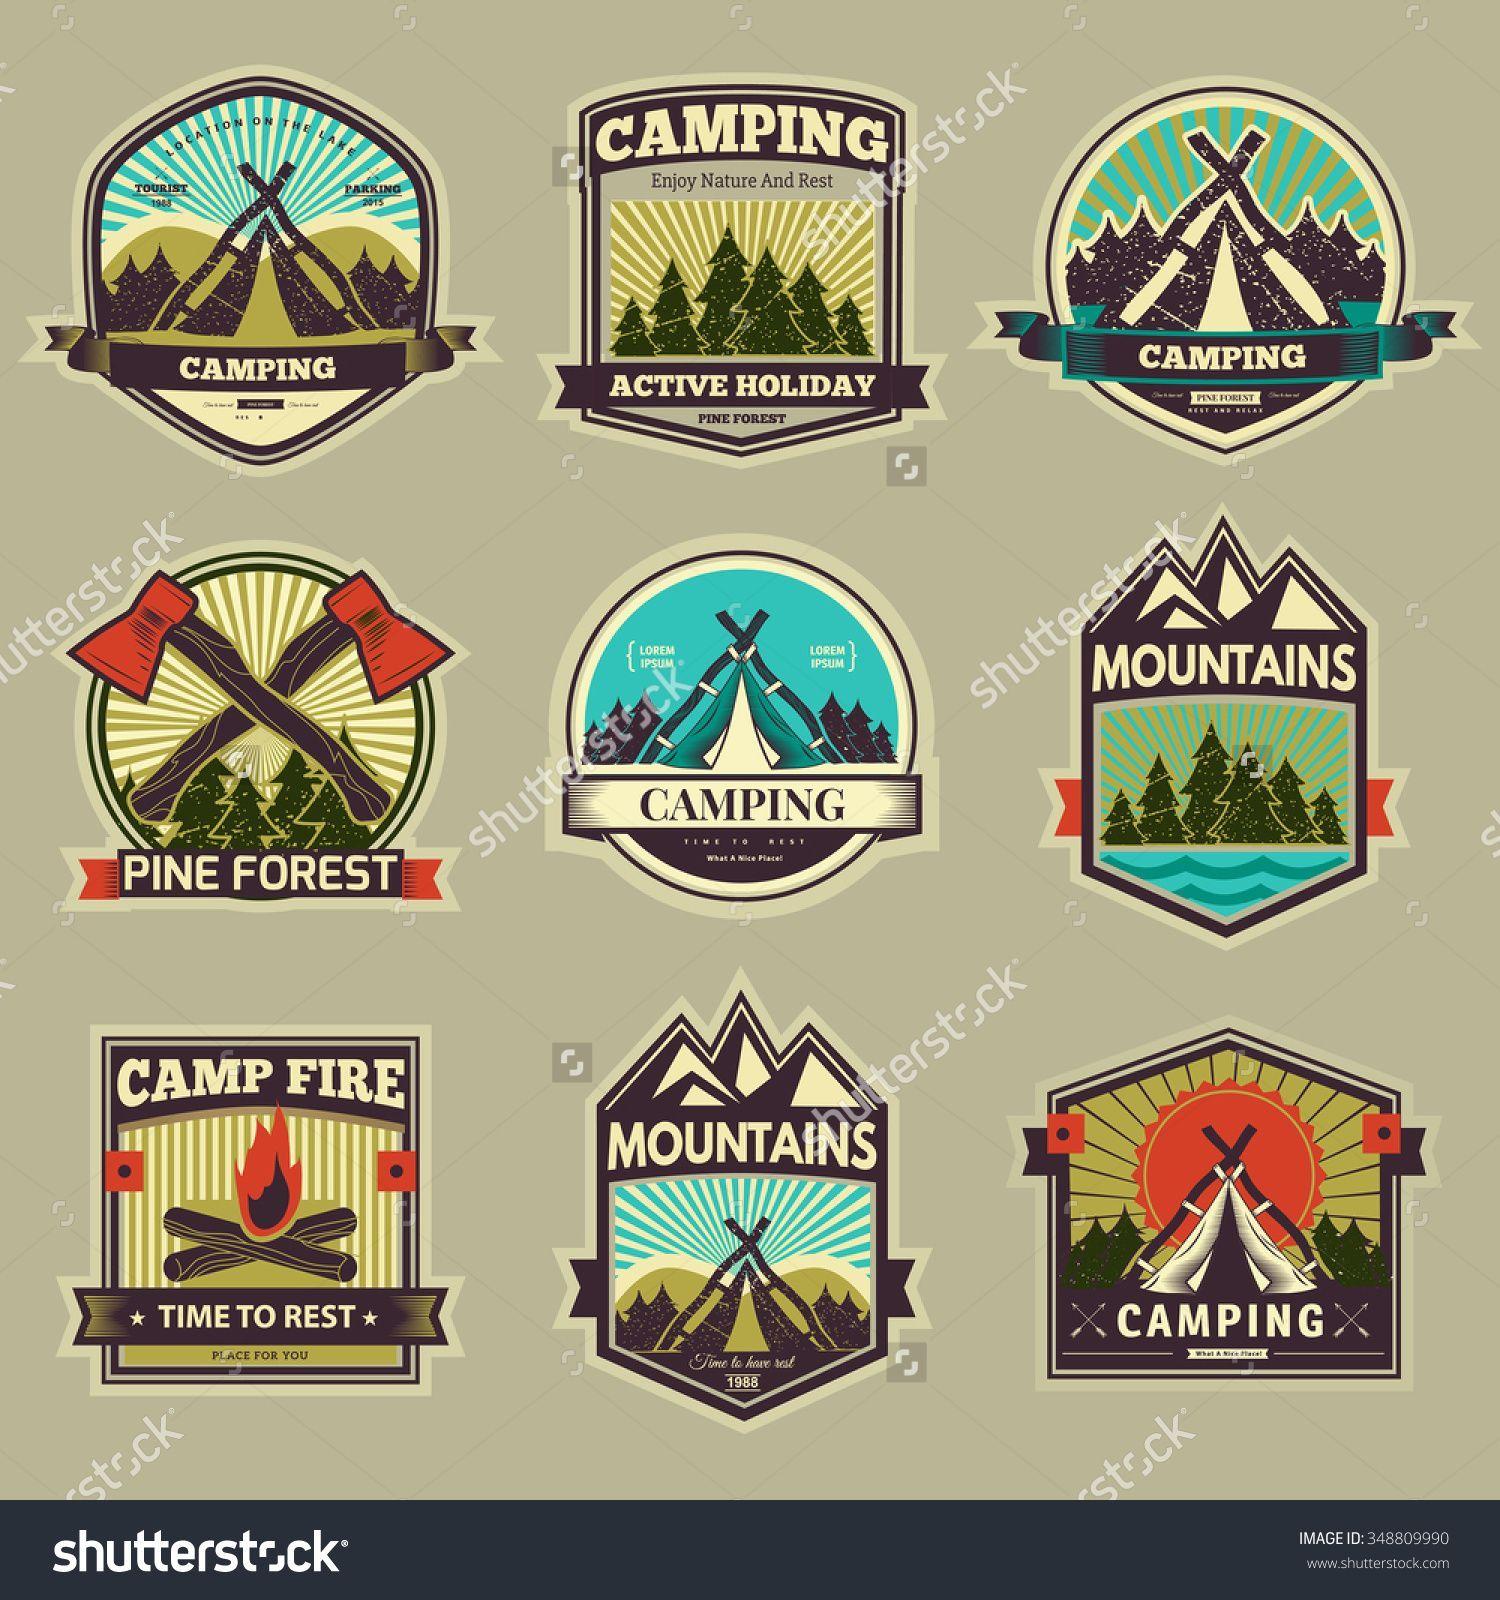 Cool Camp Logo - Pin by Ria Ruthsatz on Logo ideas | Camp logo, Logos, Retro vector